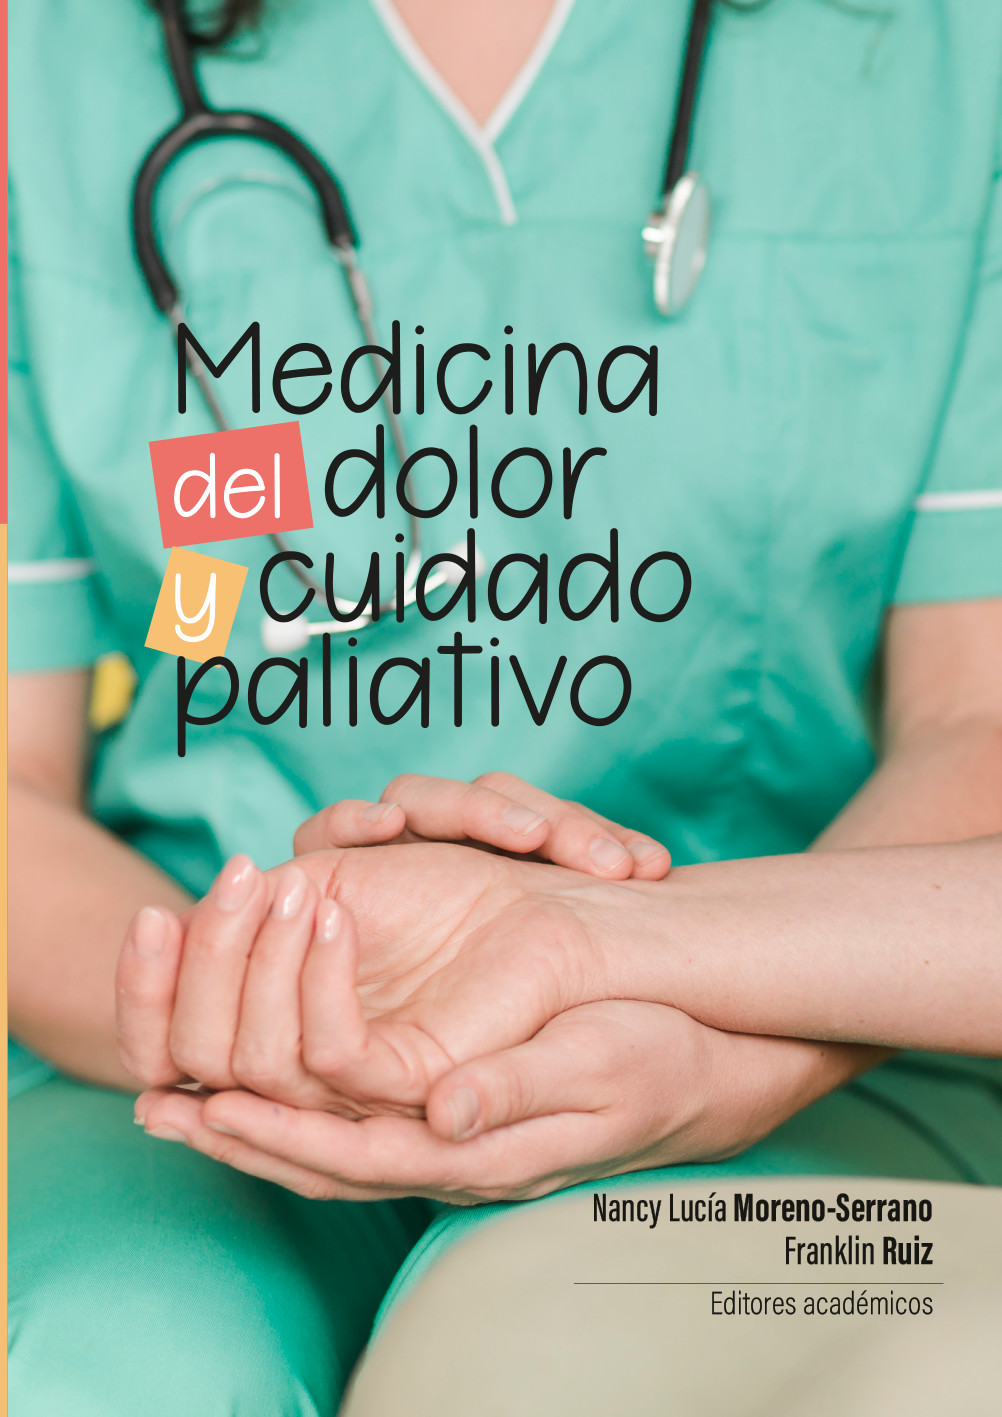 Imagen de portada del libro Medicina del dolor y cuidado paliativo